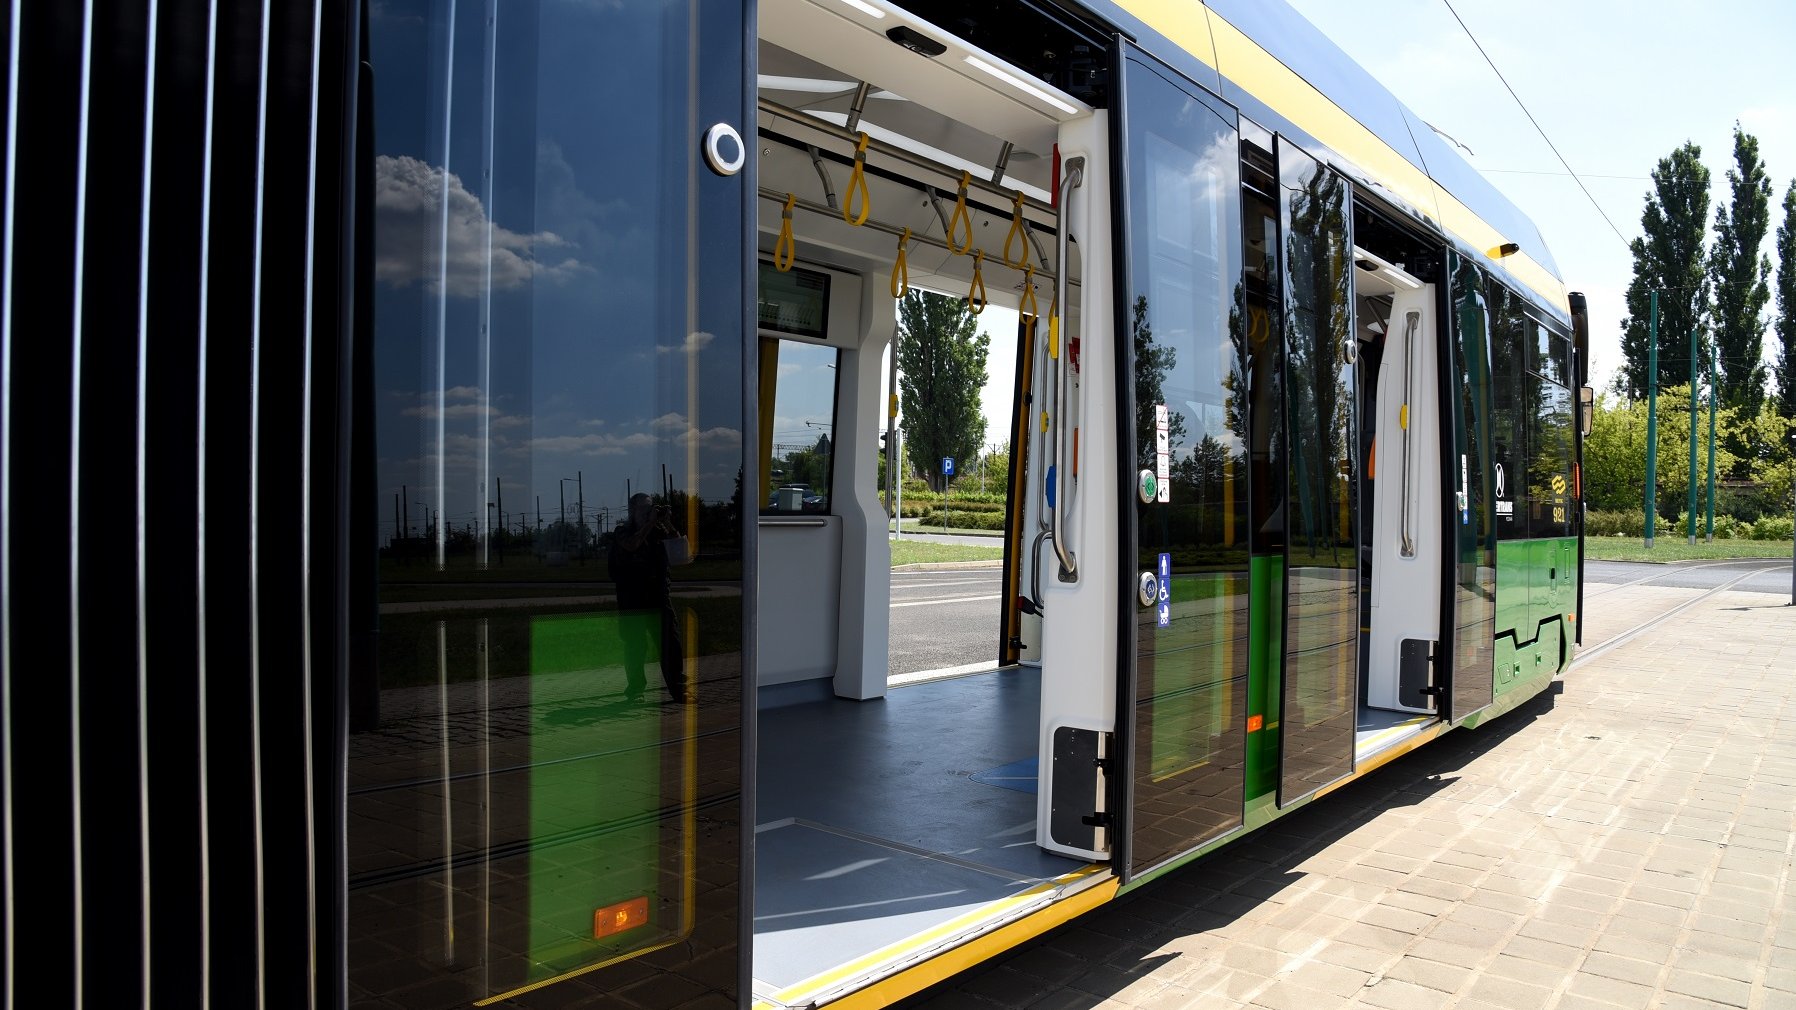 Na początku sierpnia pasażerów w Poznaniu zacznie wozić nowy dwukierunkowy tramwaj Moderus Gamma